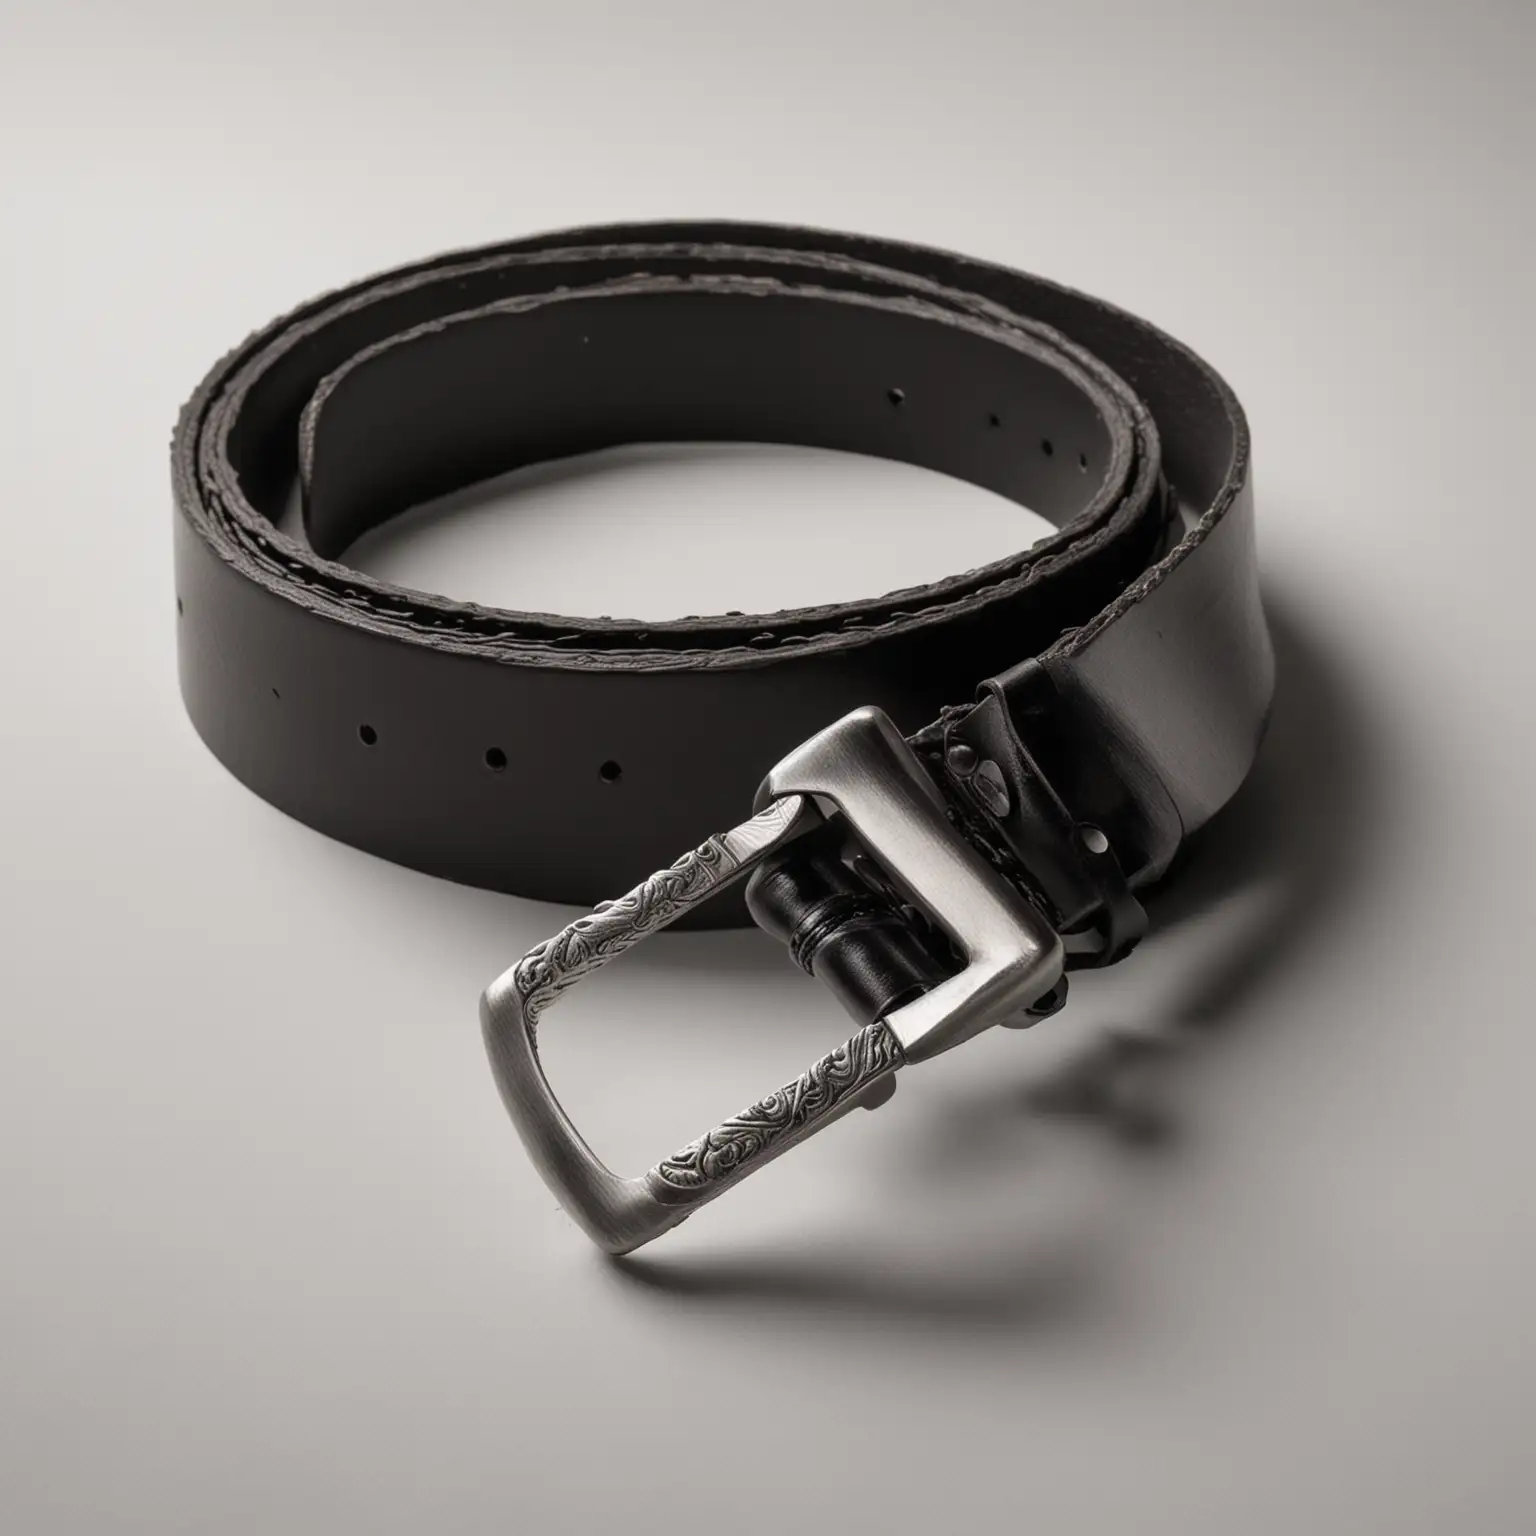 Black Leather Belt on White Background Stylish Mens Fashion Accessory